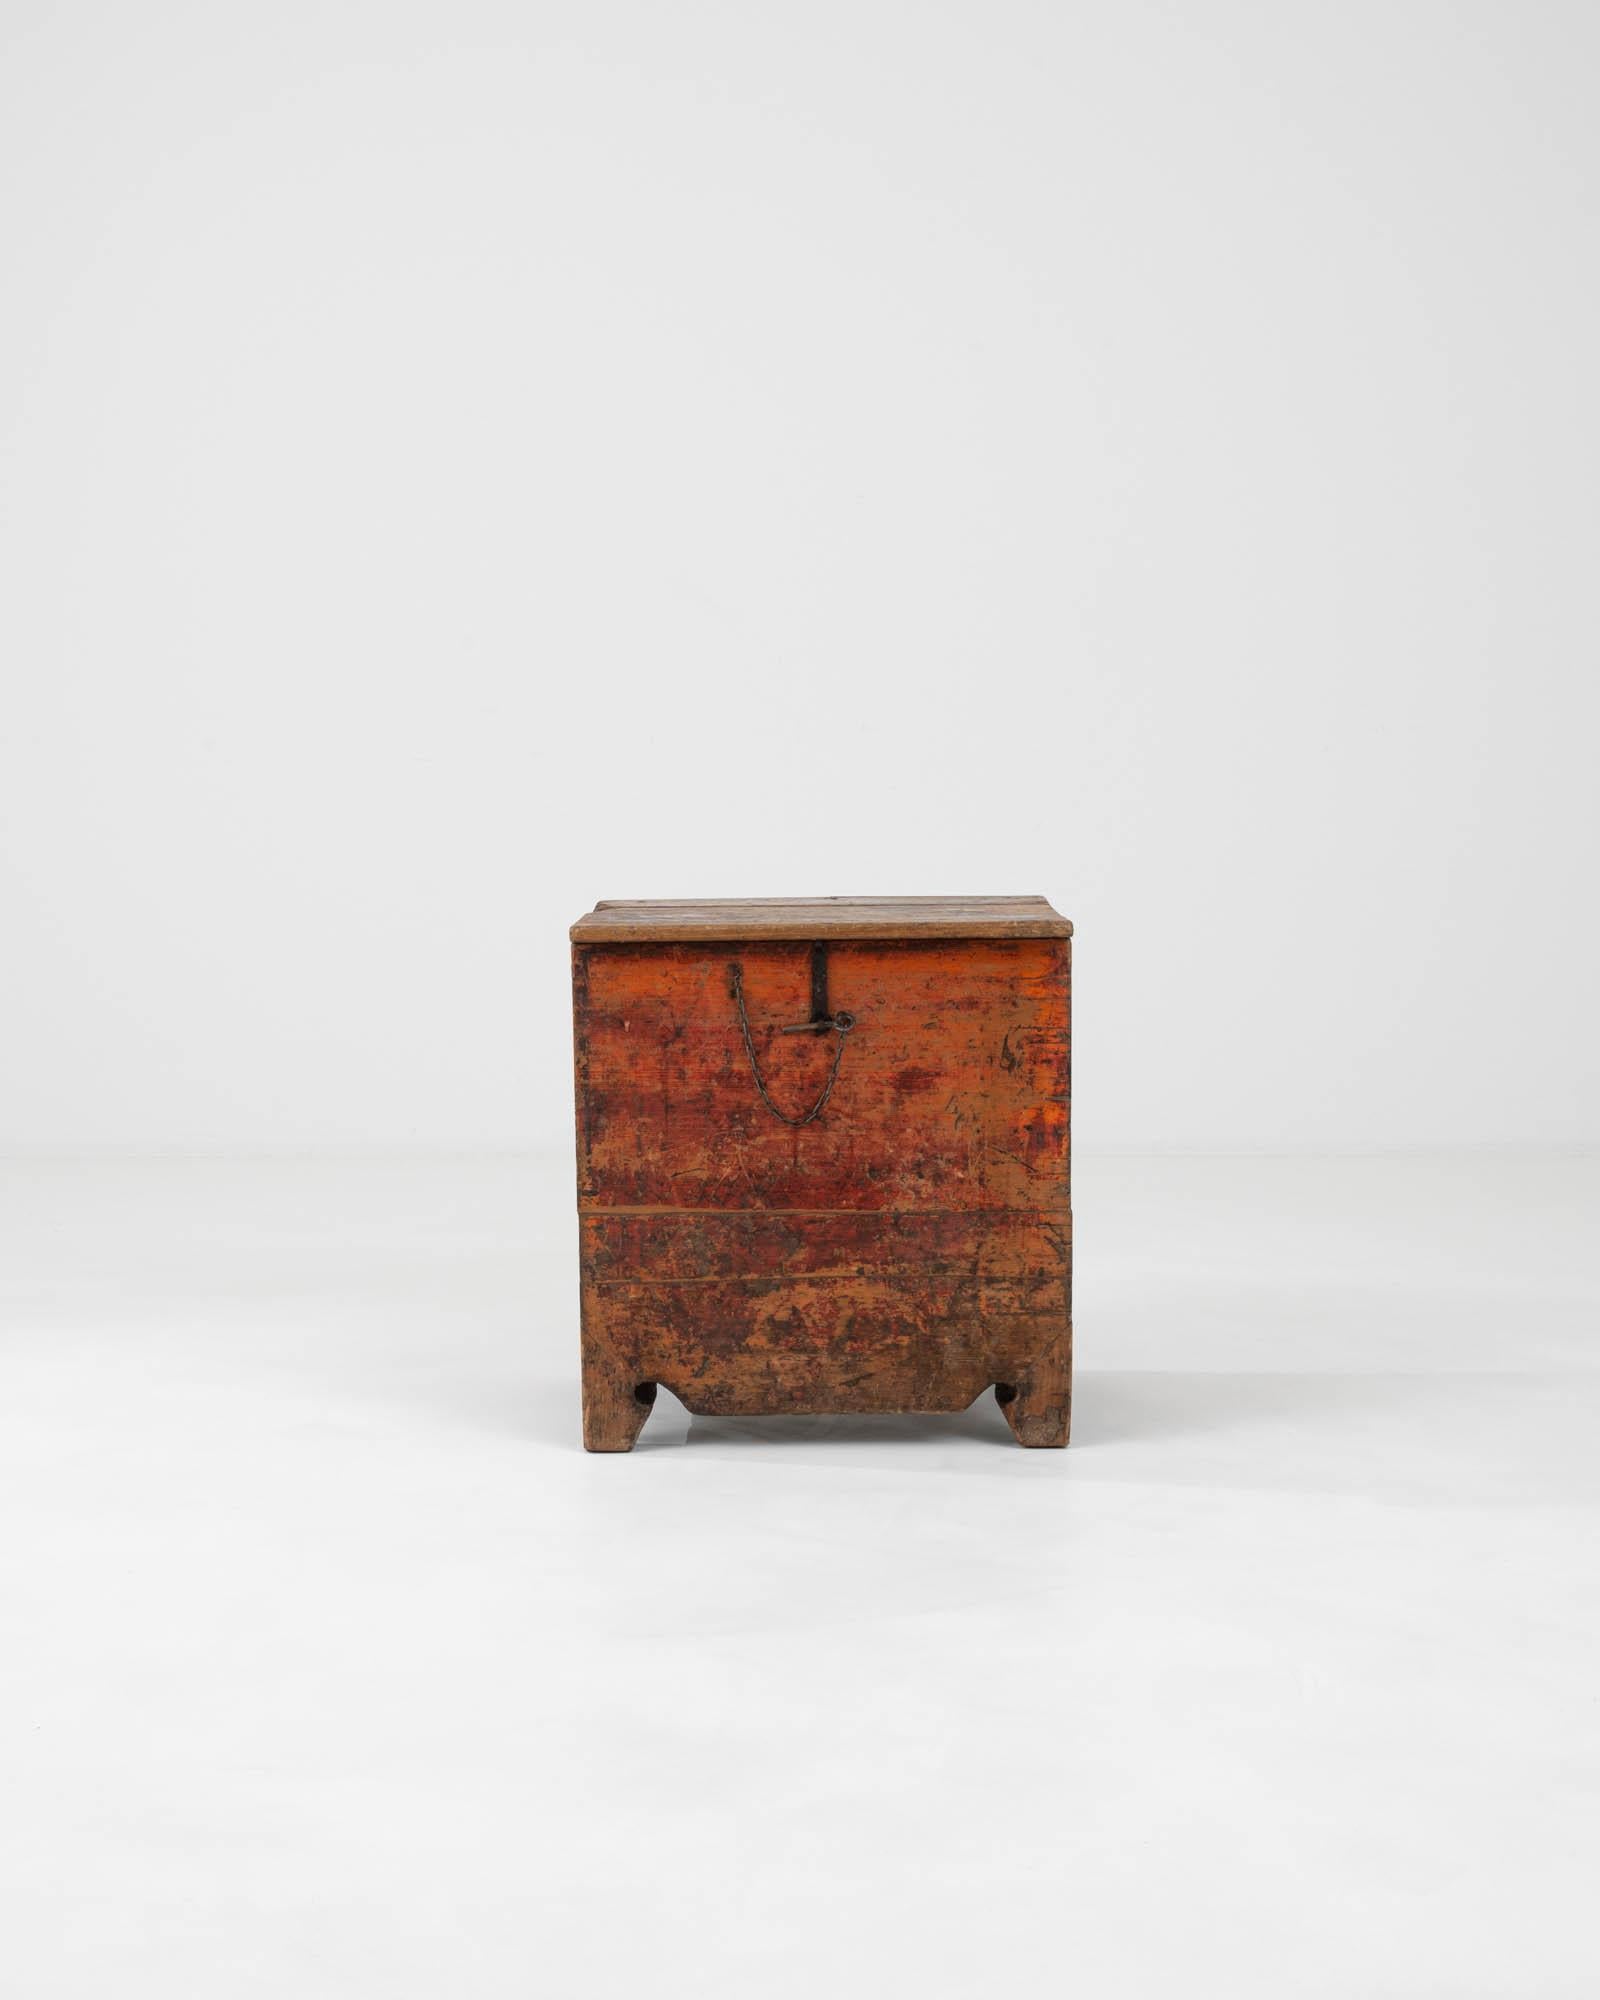 Découvrez un trésor du passé avec ce coffre scandinave en bois du XIXe siècle, un joyau rustique chargé d'histoire et de caractère. Fabriquée en bois massif, cette pièce met en valeur les tons chauds et riches de son héritage, complétés par la